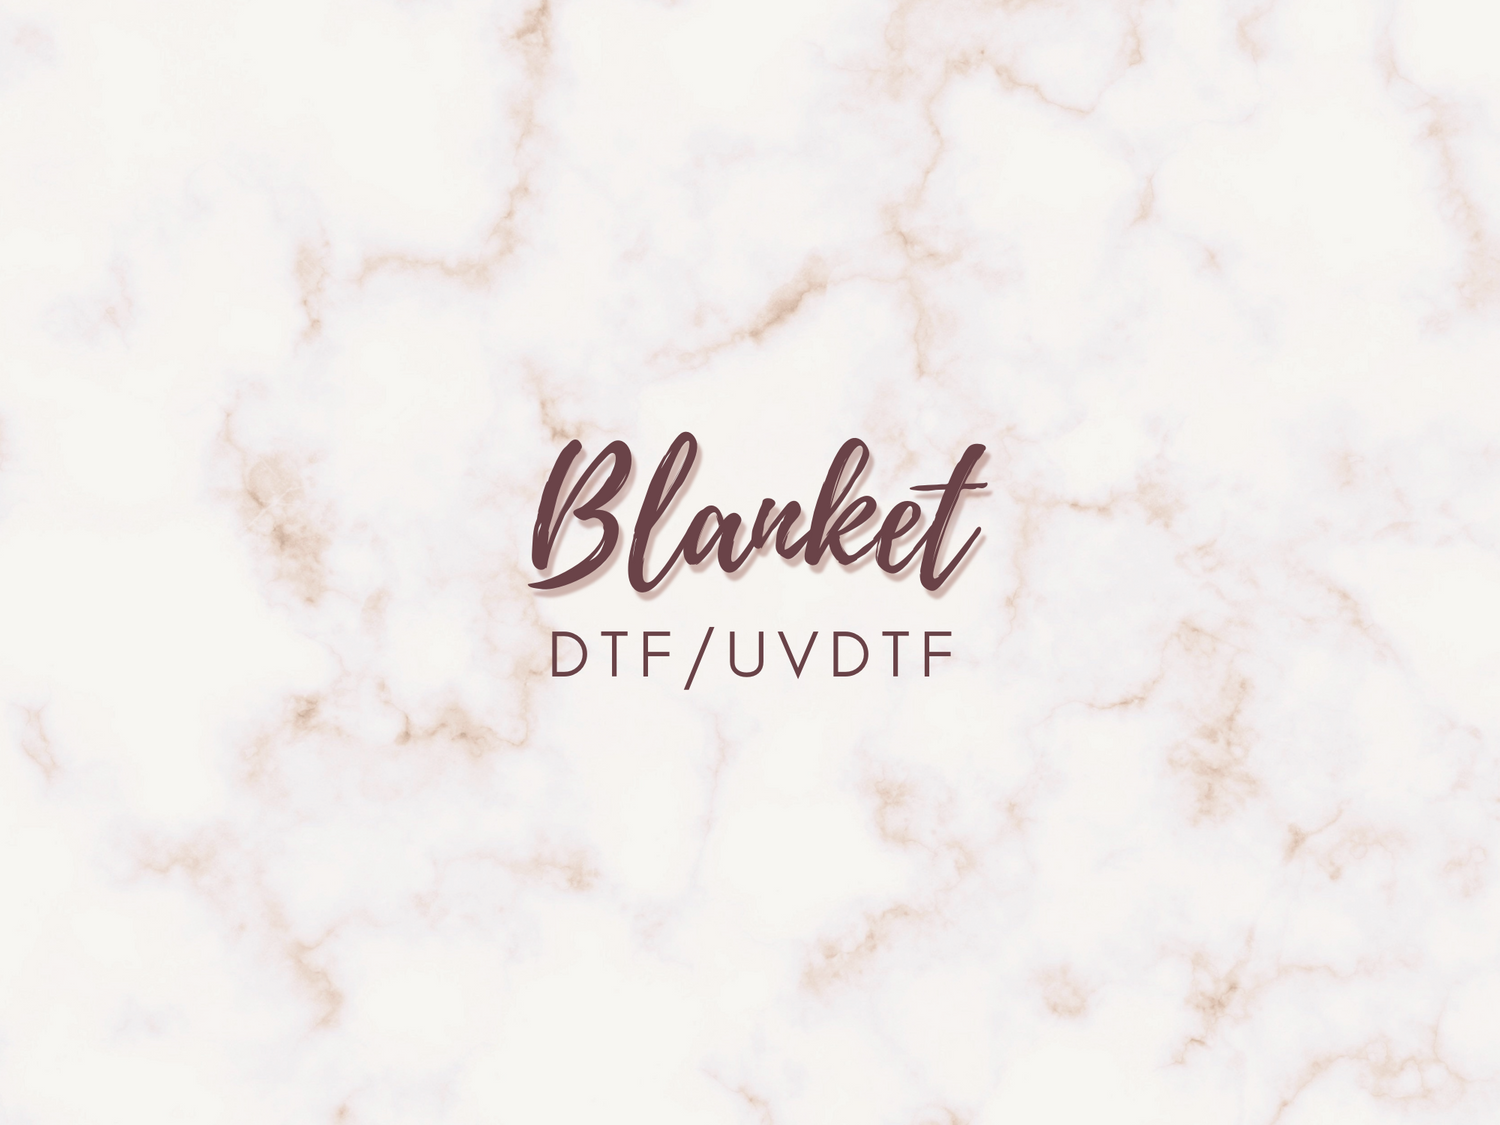 BLANKET DTF PRINTS